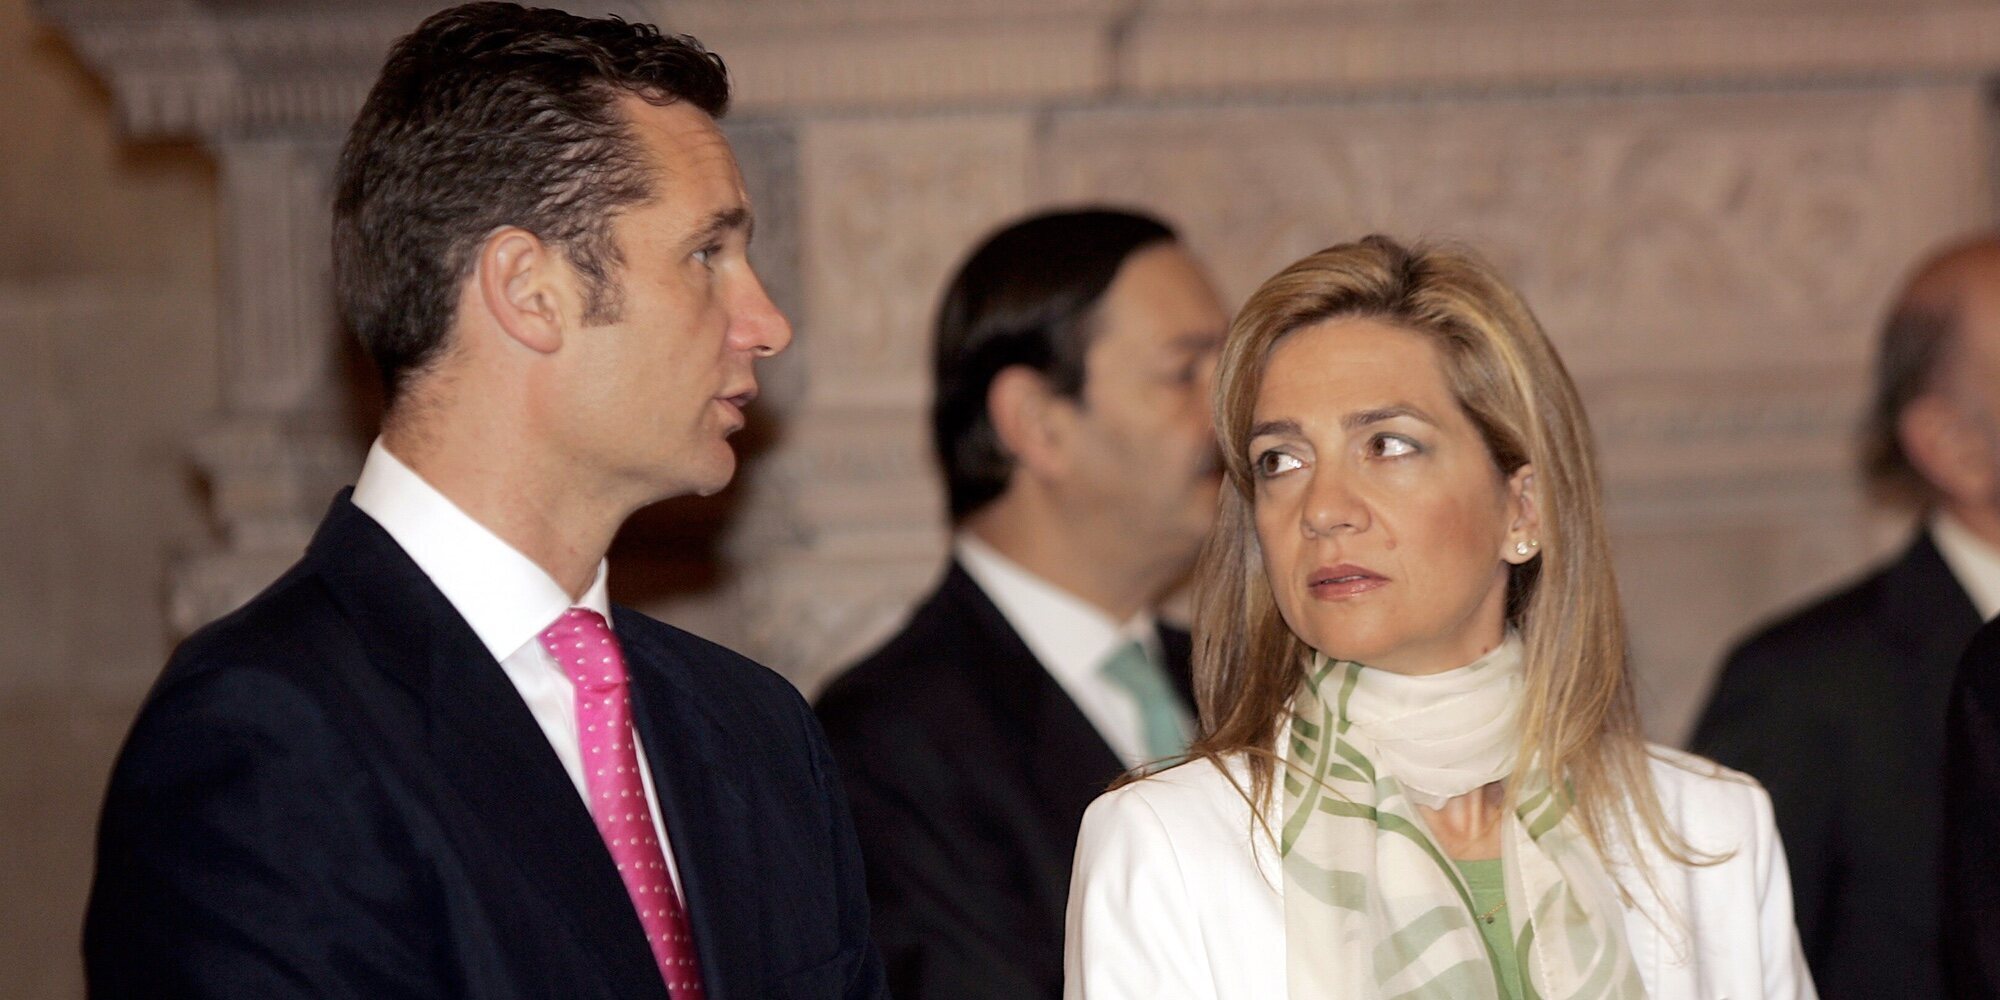 La Infanta Cristina no va a volver con Iñaki Urdangarin: no a la reconciliación ni al perdón